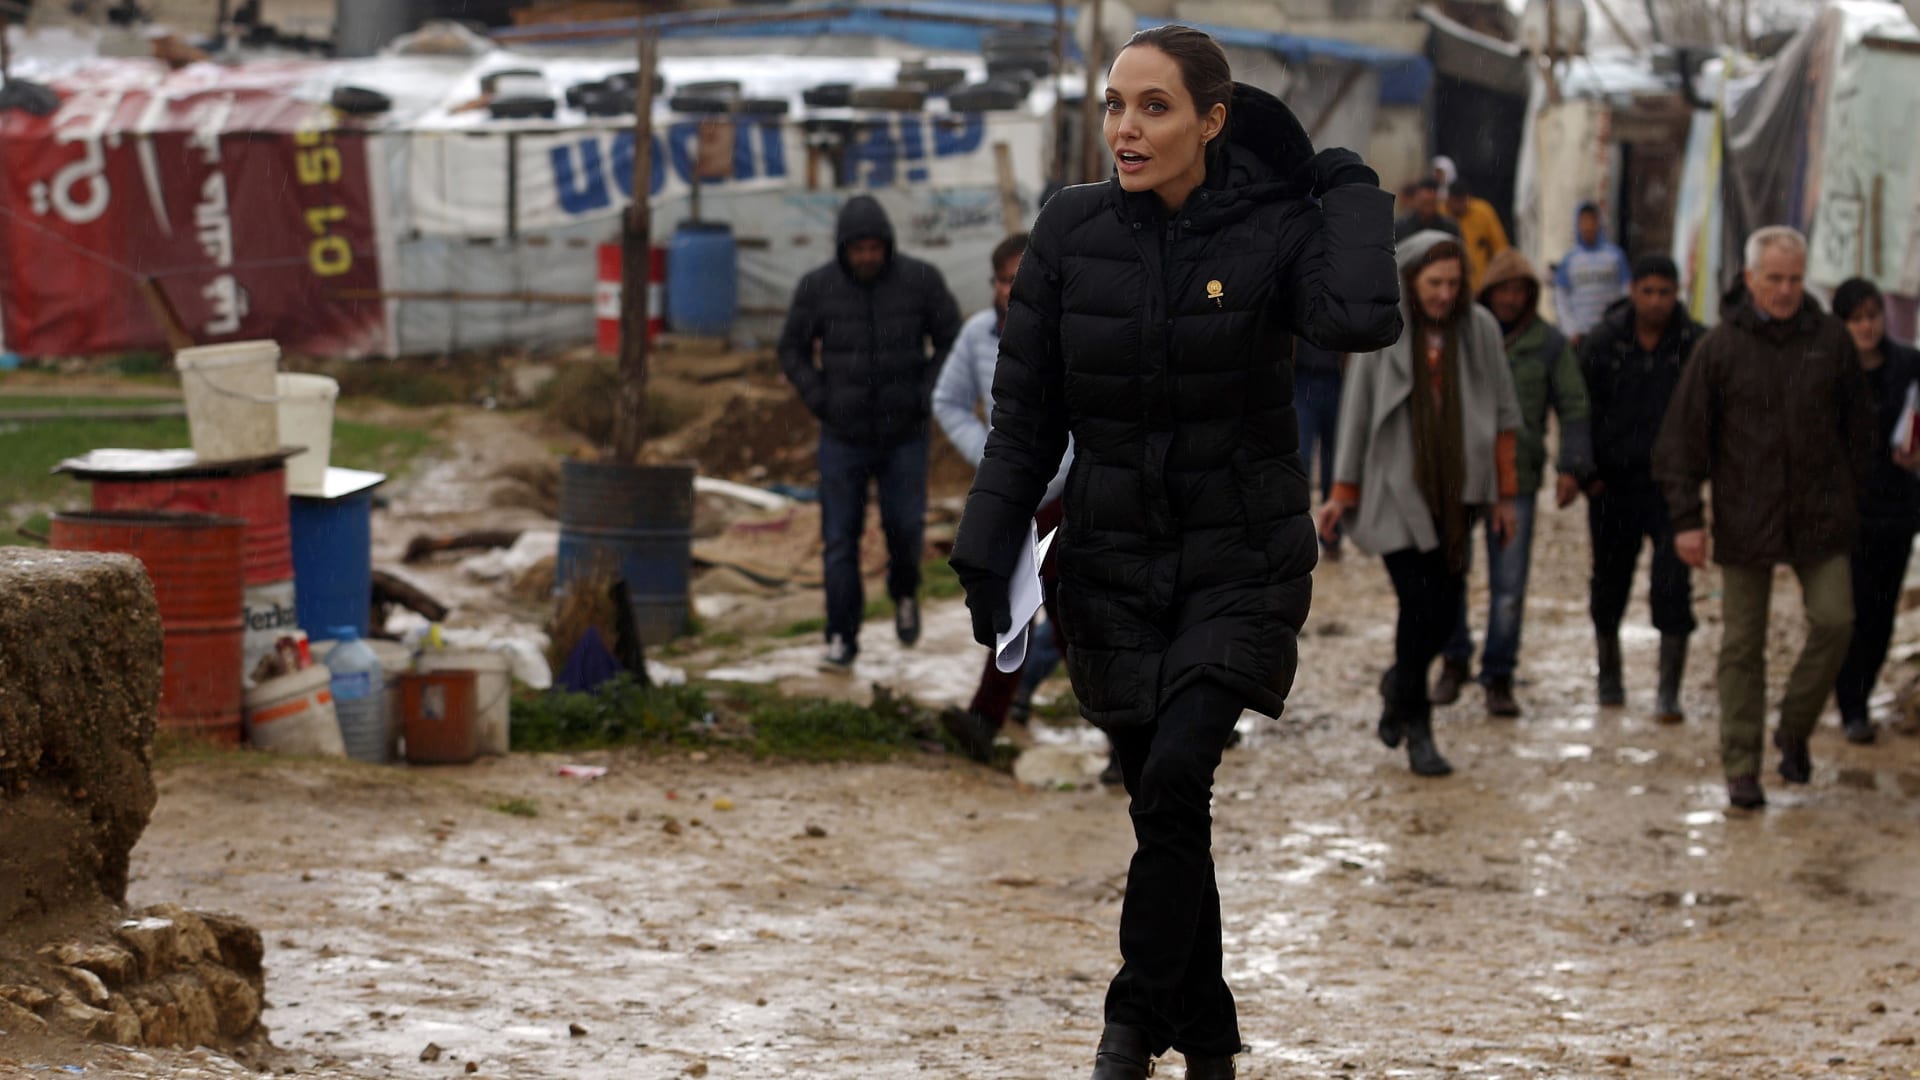 بالصور: في الذكرى الخامسة للحرب السورية.. أنجلينا جولي تزور اللاجئين السوريين بلبنان